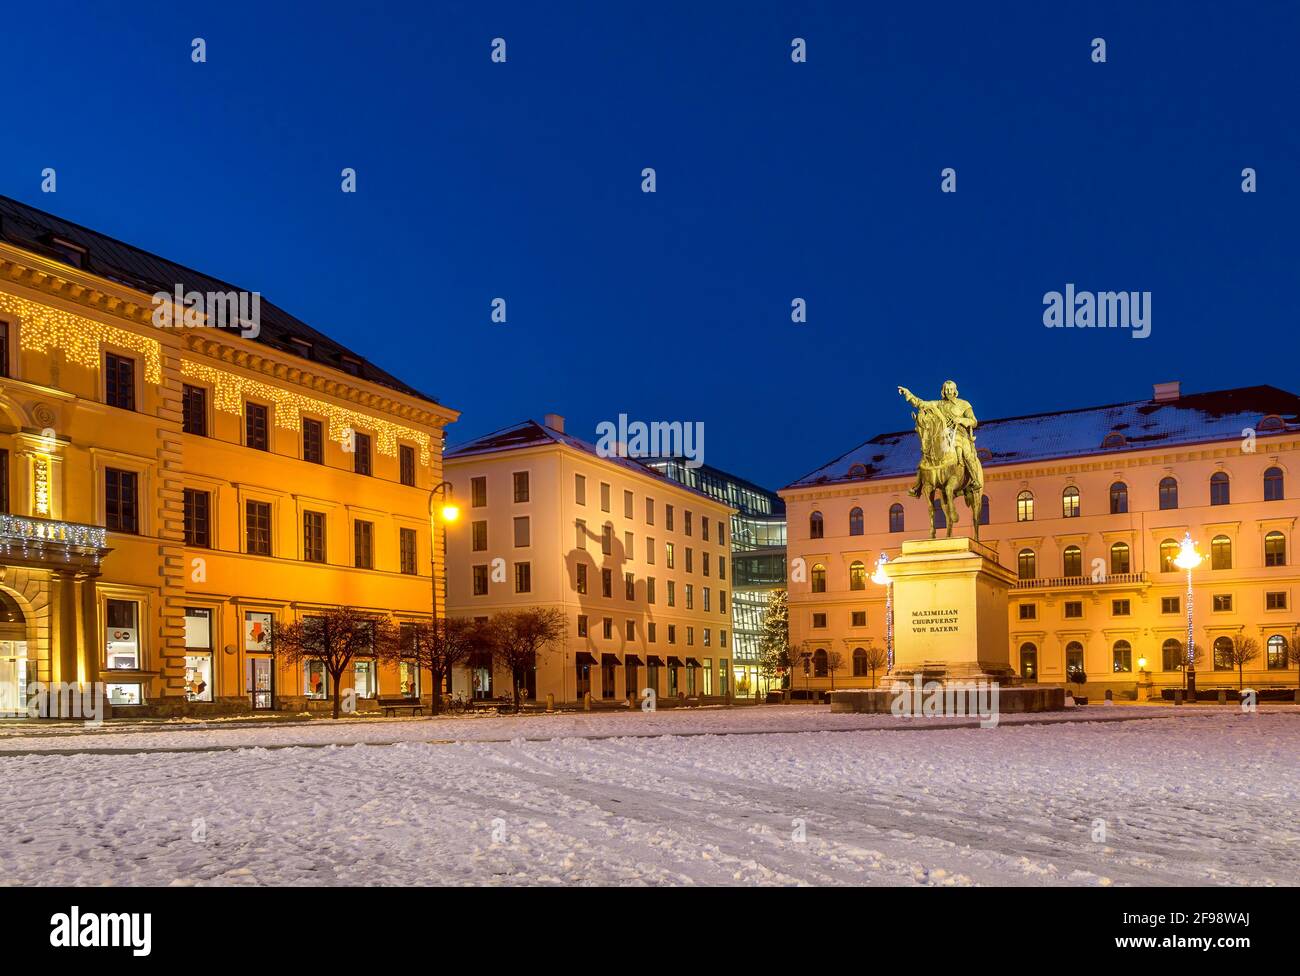 Statua equestre di bronzo di Massimiliano, Elettore di Baviera, Wittelsbacher Platz, Brienner Strasse, Monaco di Baviera, Baviera, Germania, Europa Foto Stock